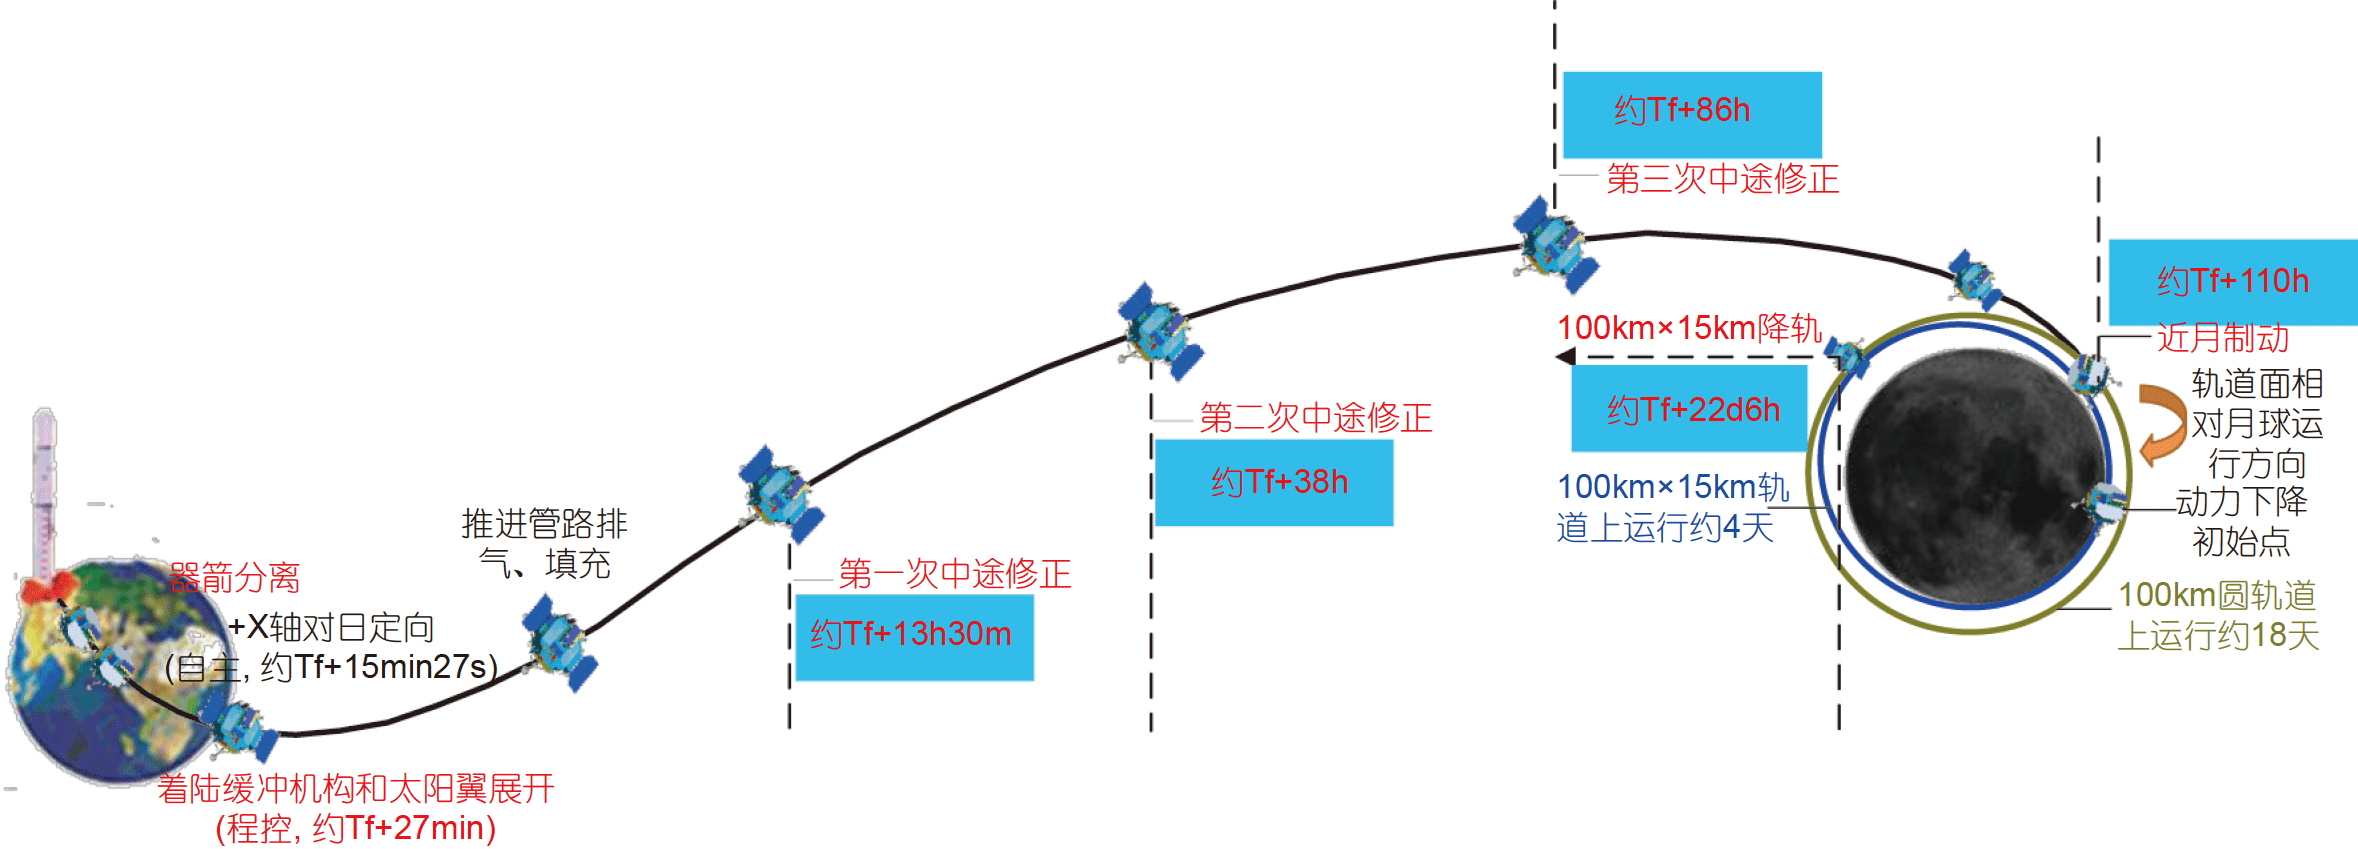 Миссия «Чанъэ-4» — спутник-ретранслятор «Цэюцяо» (Сорочий мост) - 45